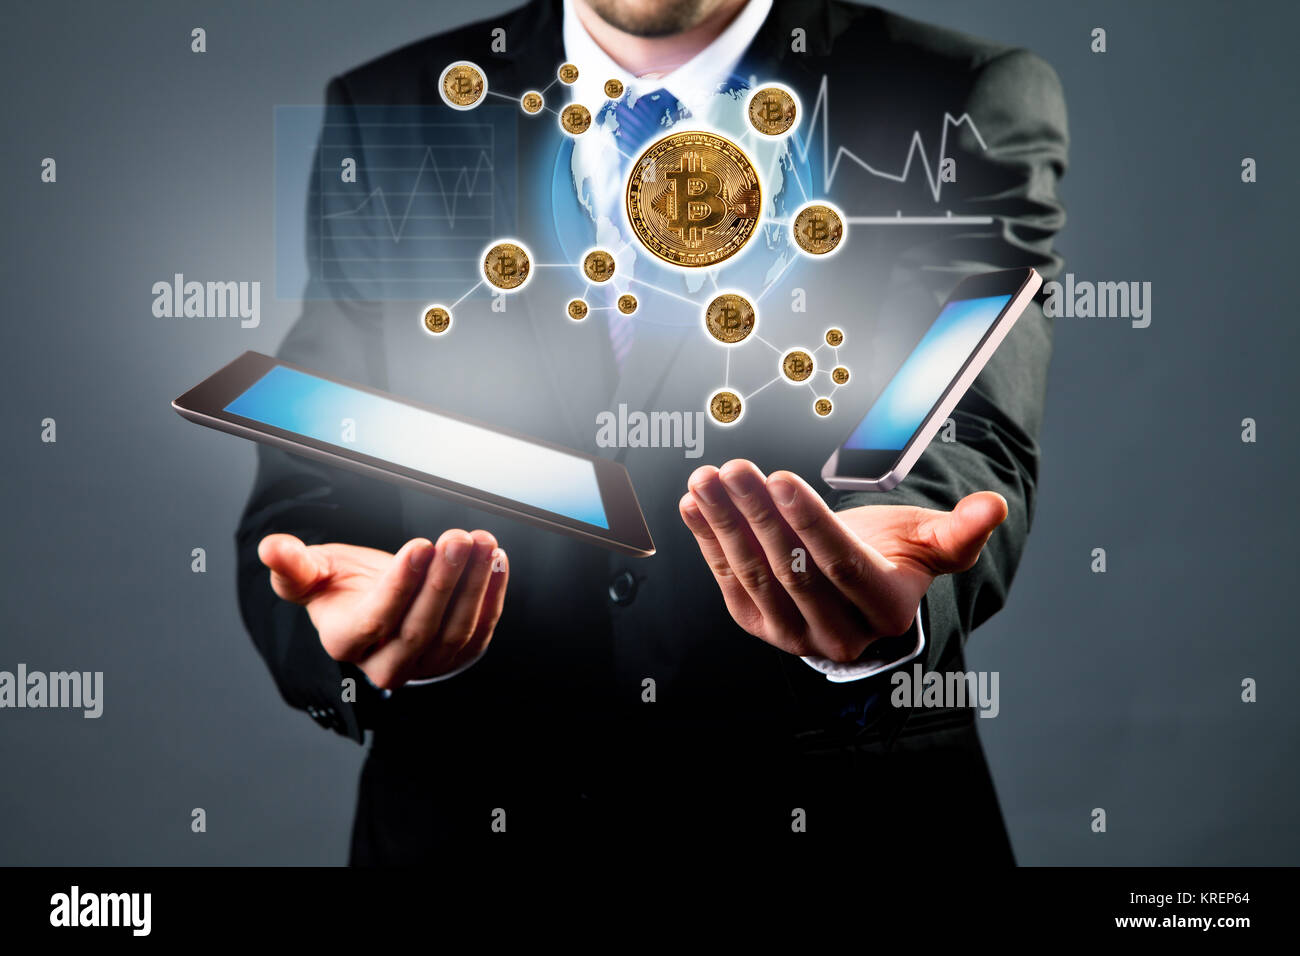 Digitale Regelung mit Geschäftsmann hand mit Tablet-PC und Smartphone. Konzept bitcoins Währung, globale Verbindung, Internet und Technologien, grap Stockfoto